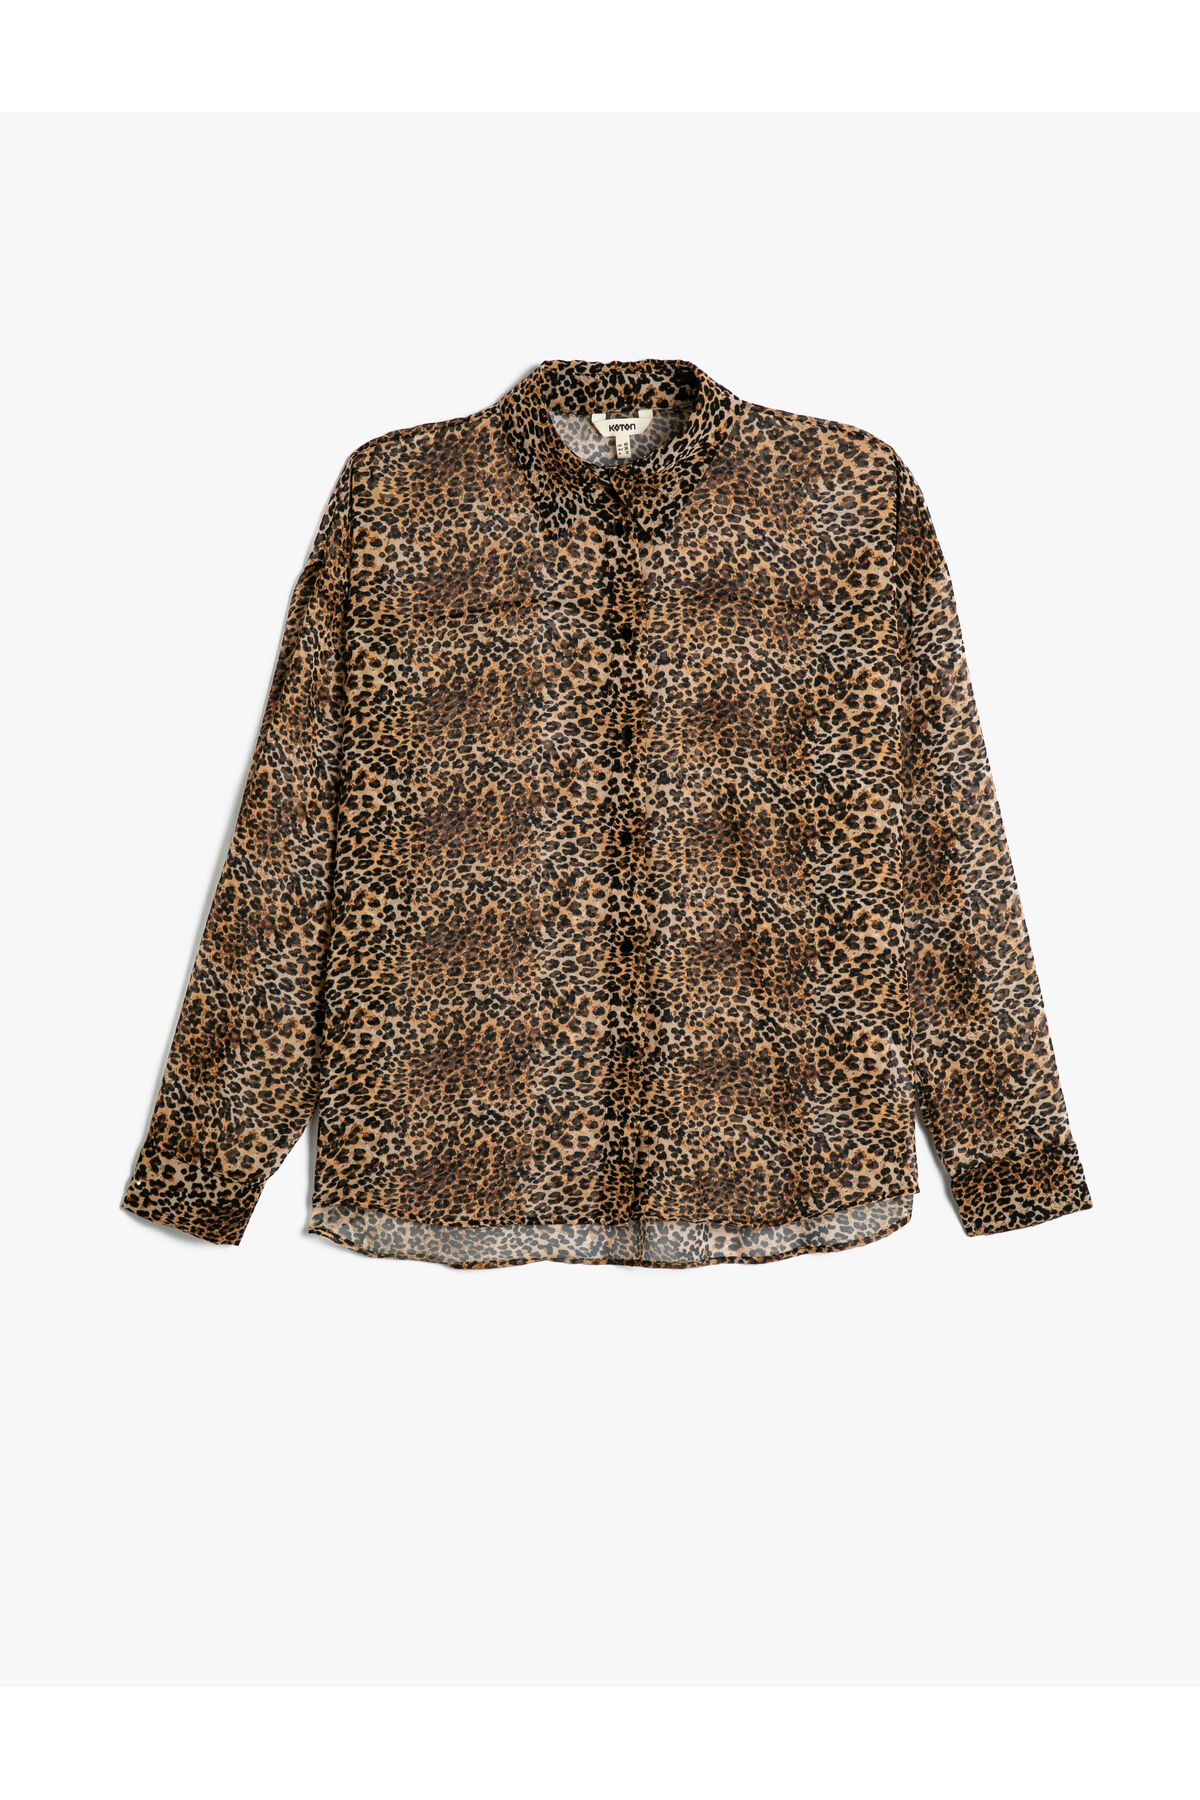 Levně Koton Leopard Patterned Shirt Long Sleeve Buttoned